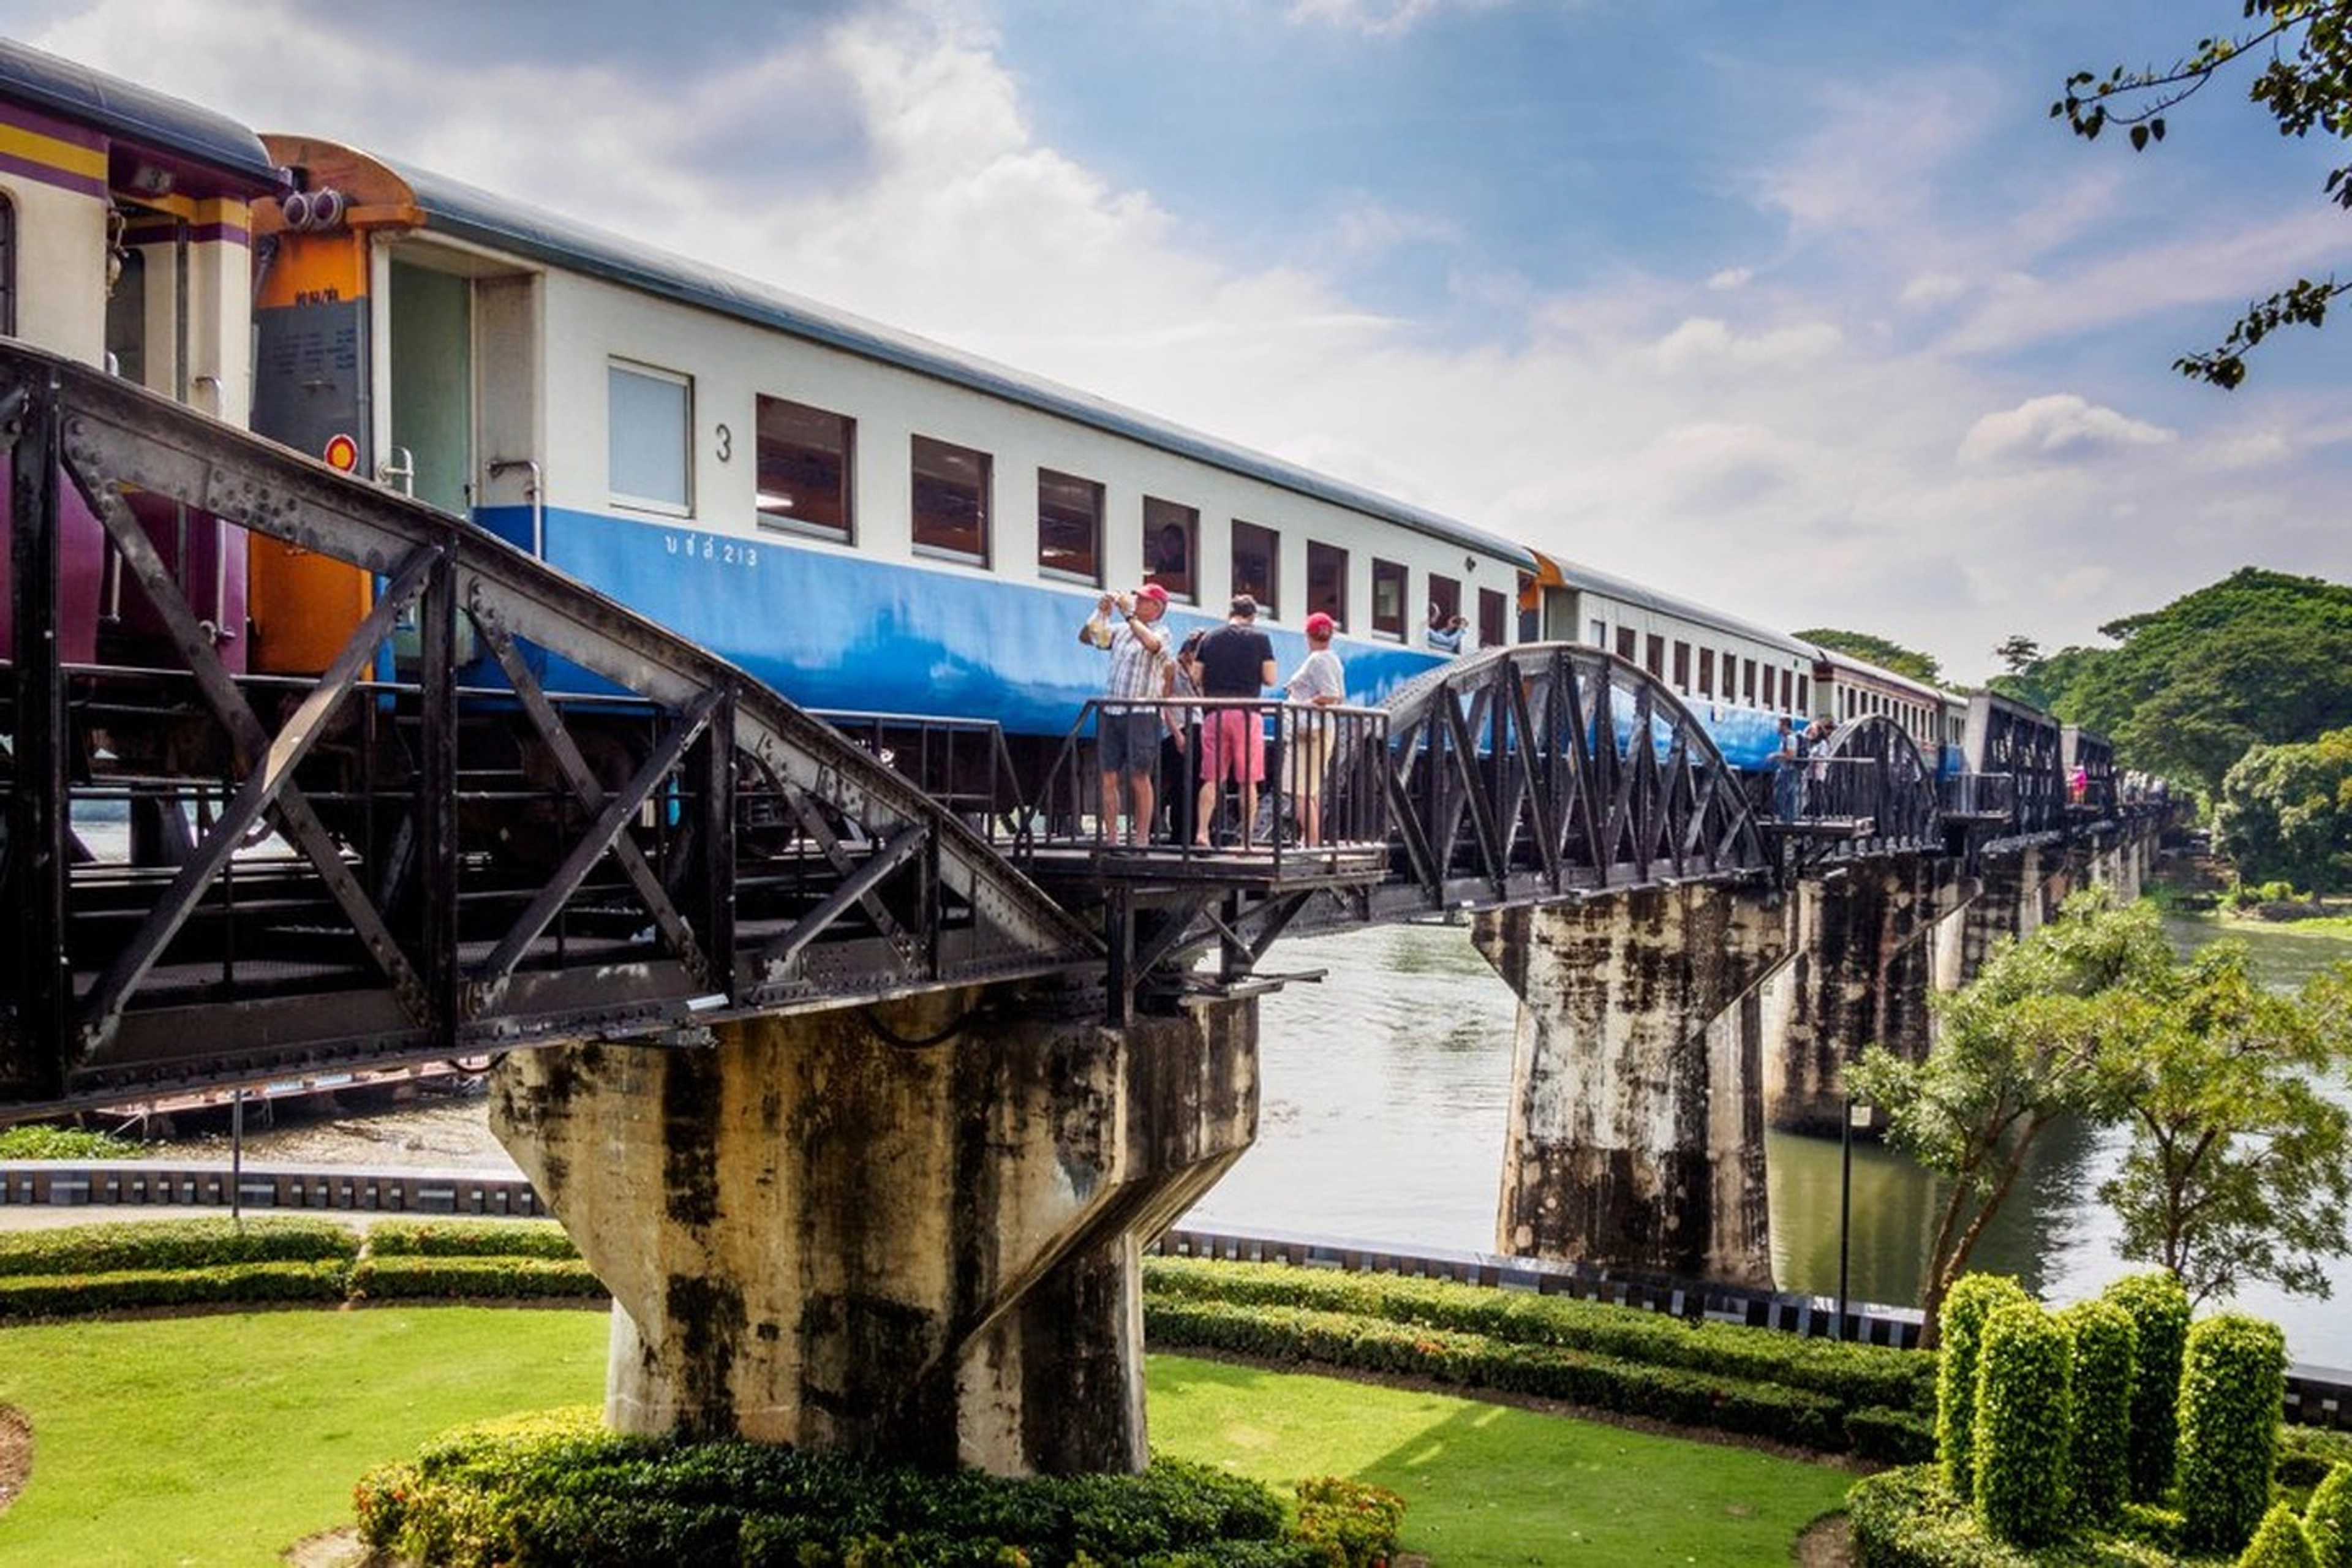 Ghé thăm những cây cầu nổi tiếng này trong chuyến đi của bạn đến Thái Lan